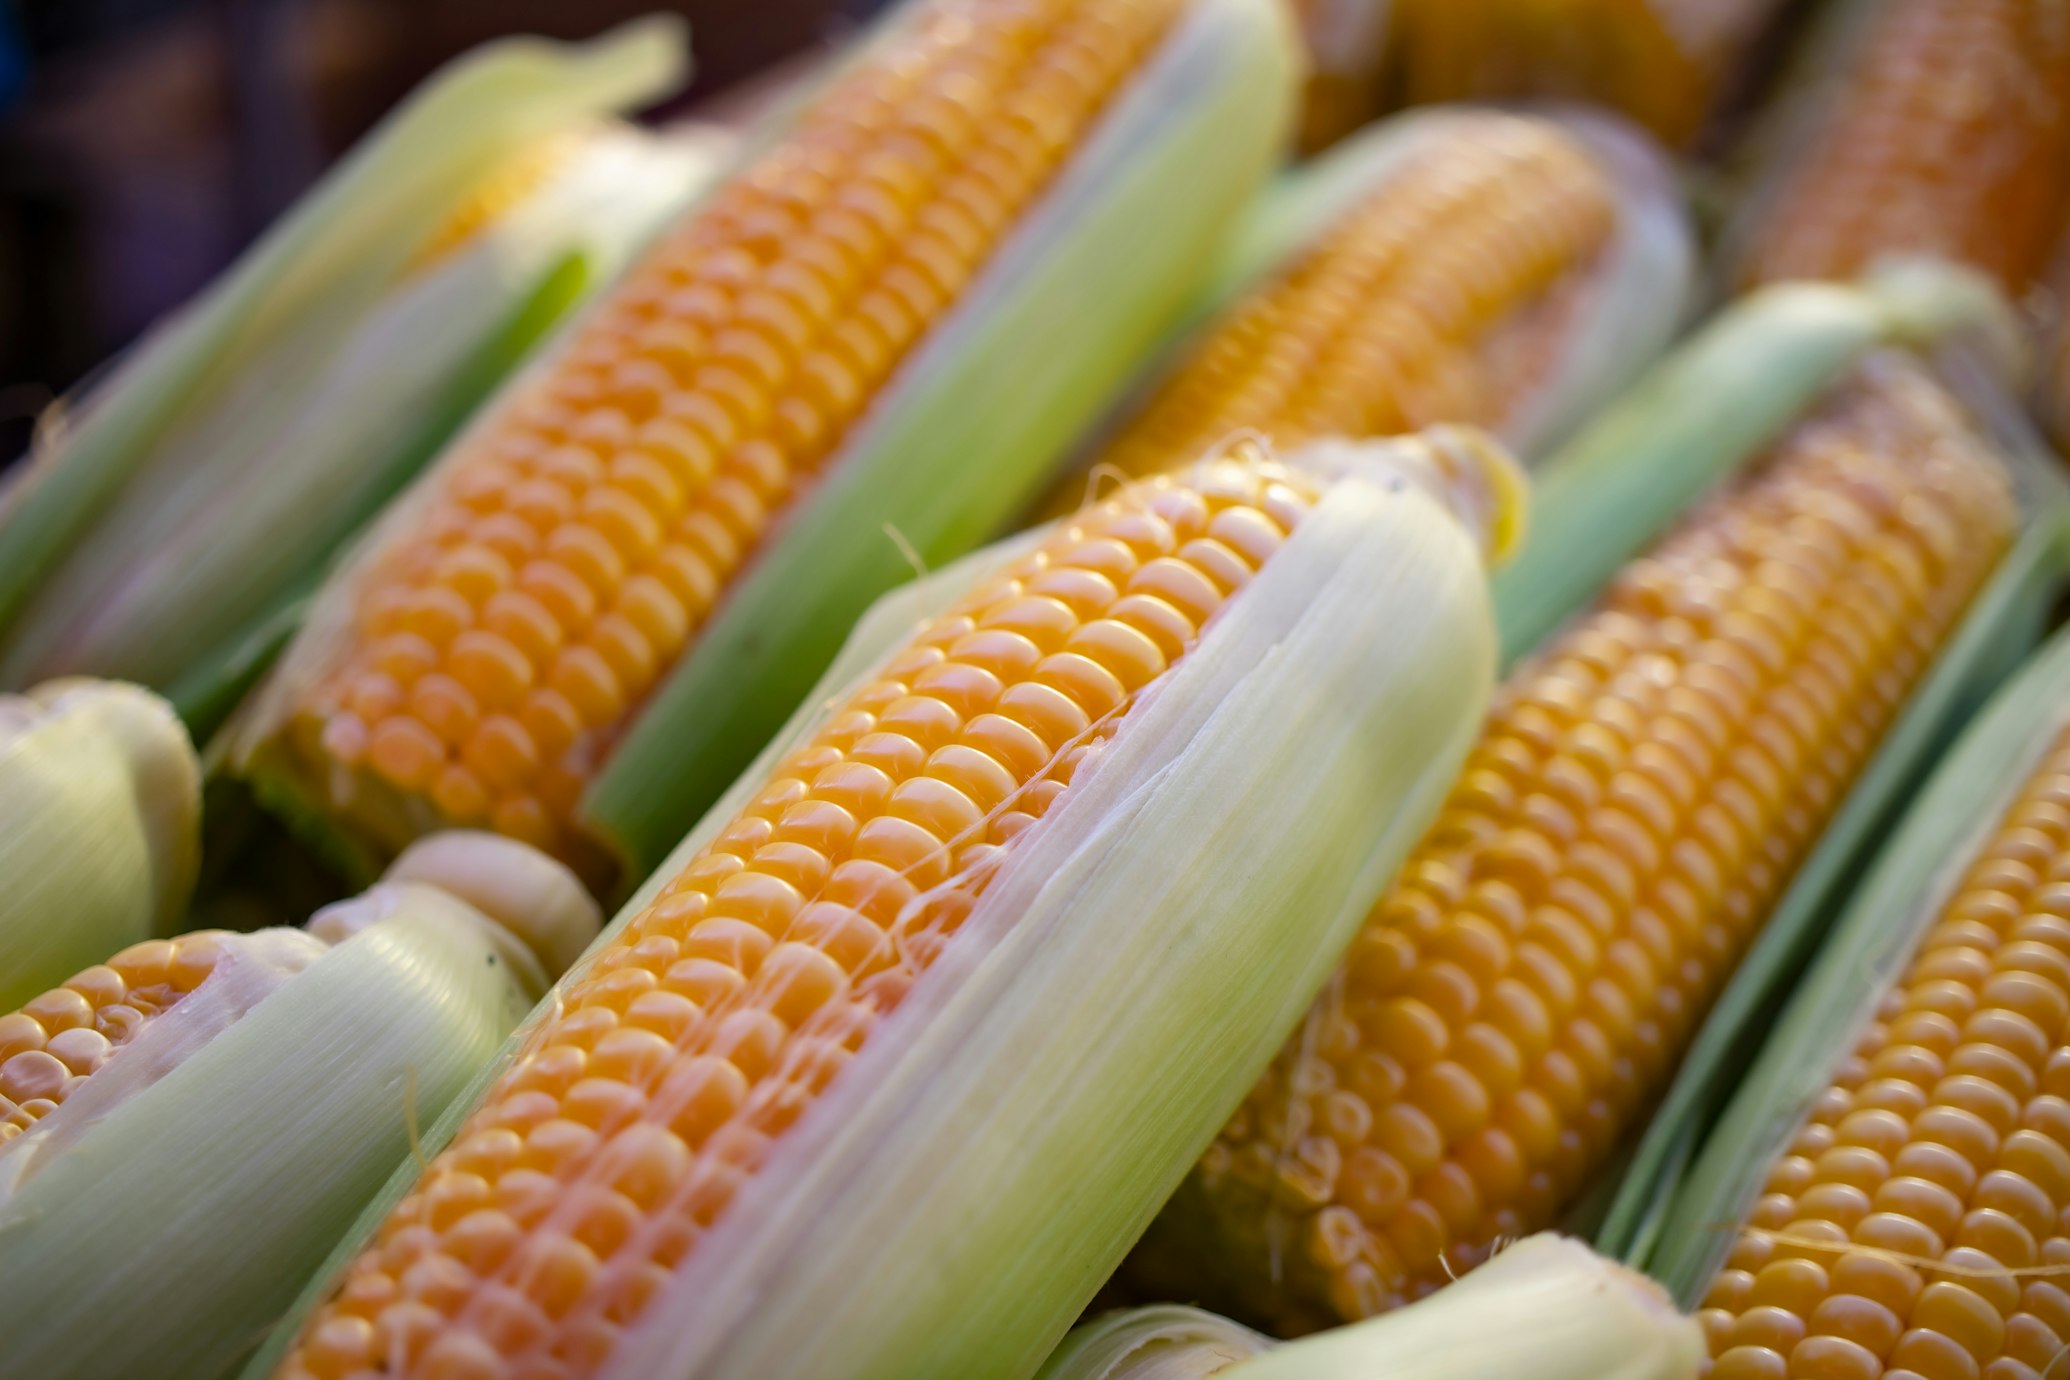 ціна кукурузи в Україні за тонну